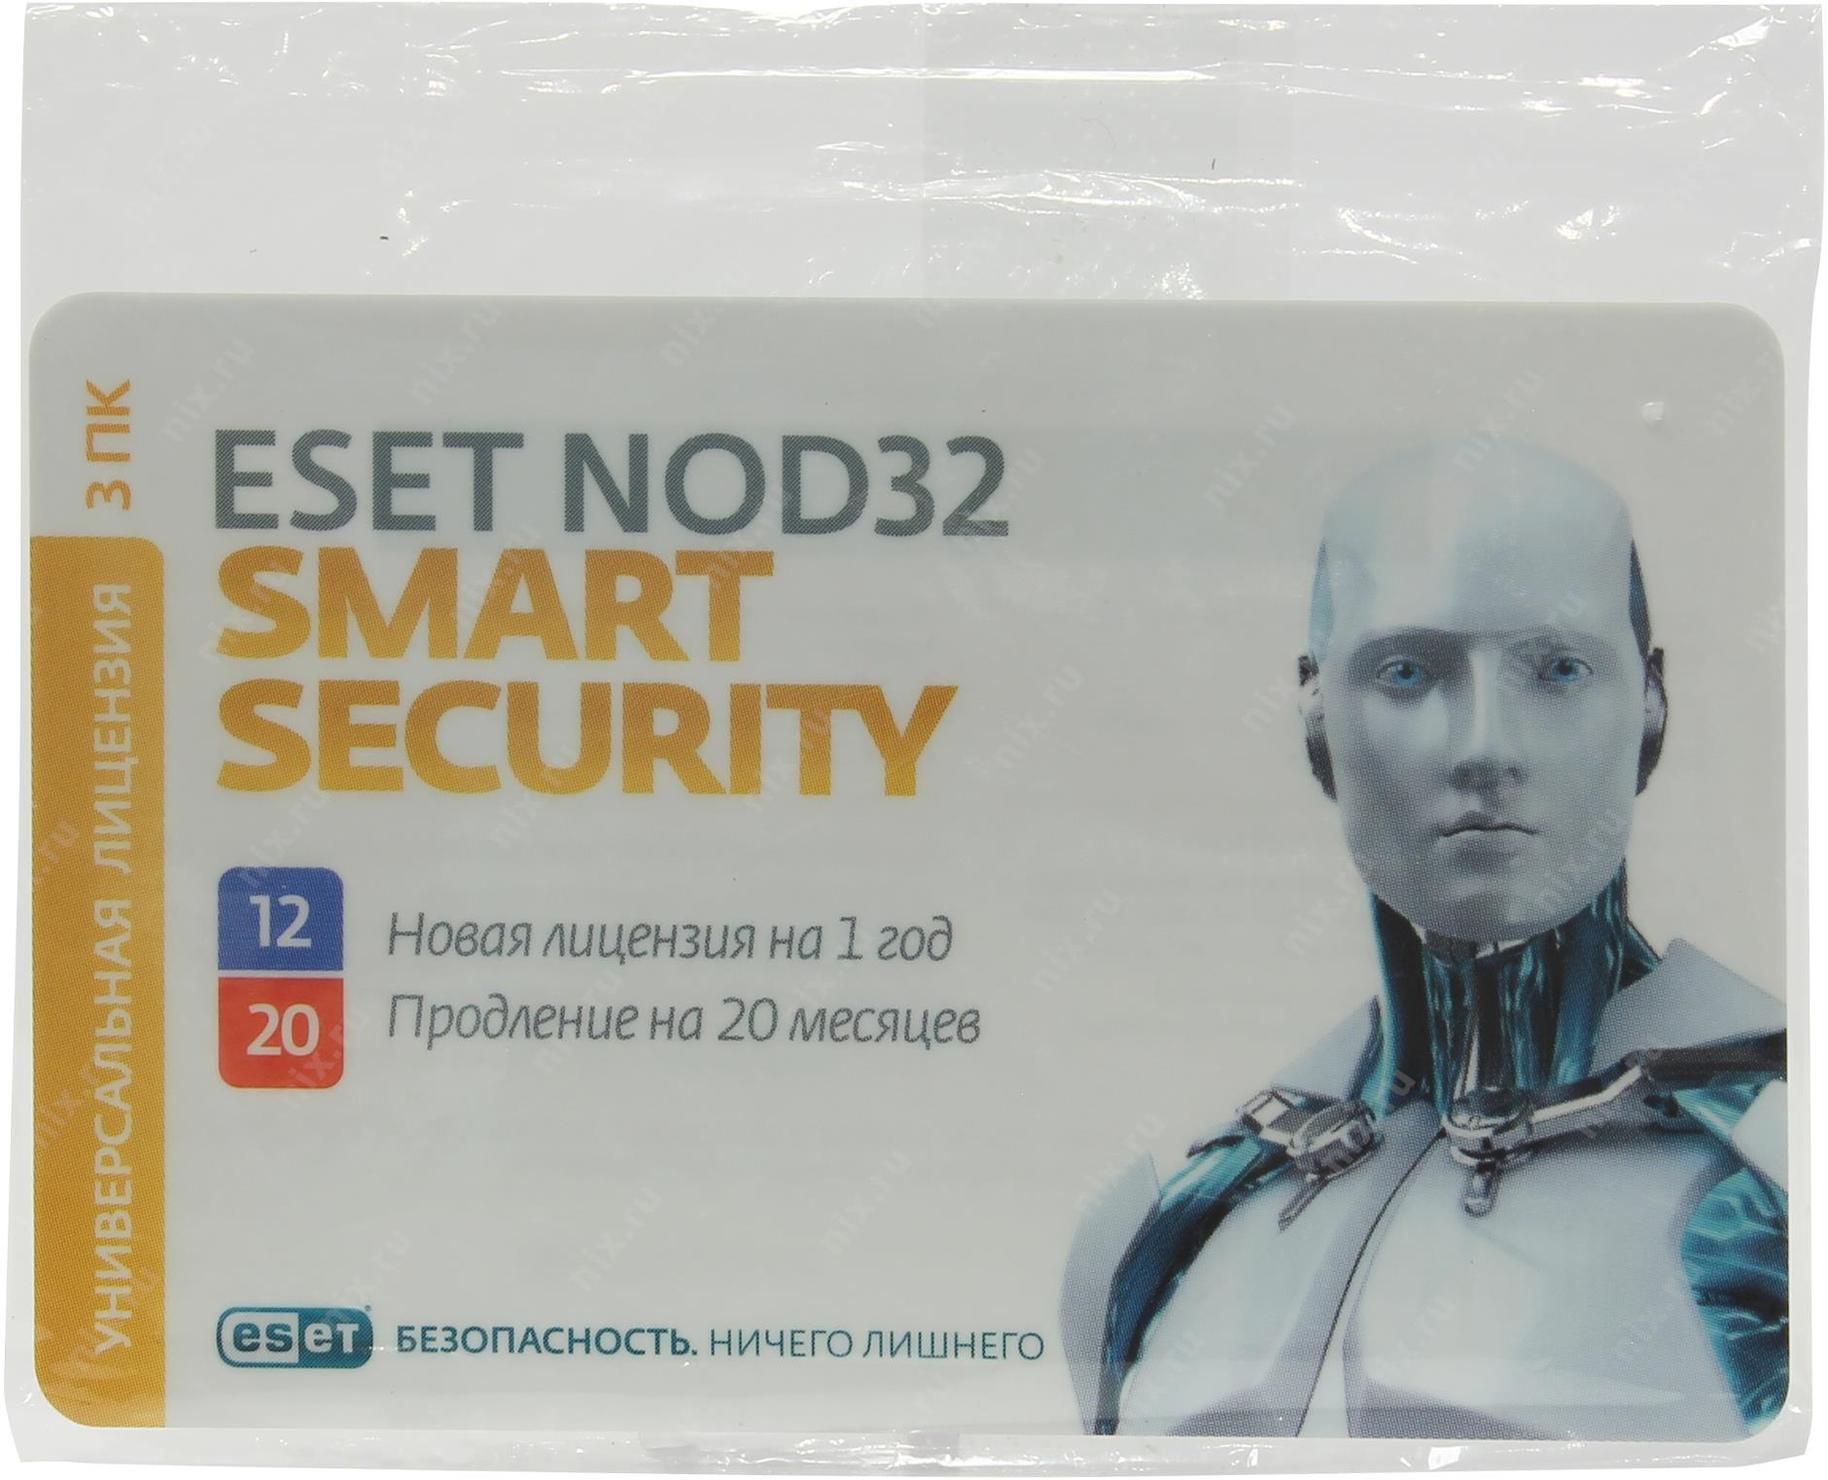 ESET nod32 Smart Security. Антивирус nod32 продление лицензии. ESET nod32 Smart Security Family - карта продления лицензии (3 устройства, 1 год) только лицензия. Бесплатная лицензия нод 32 на год